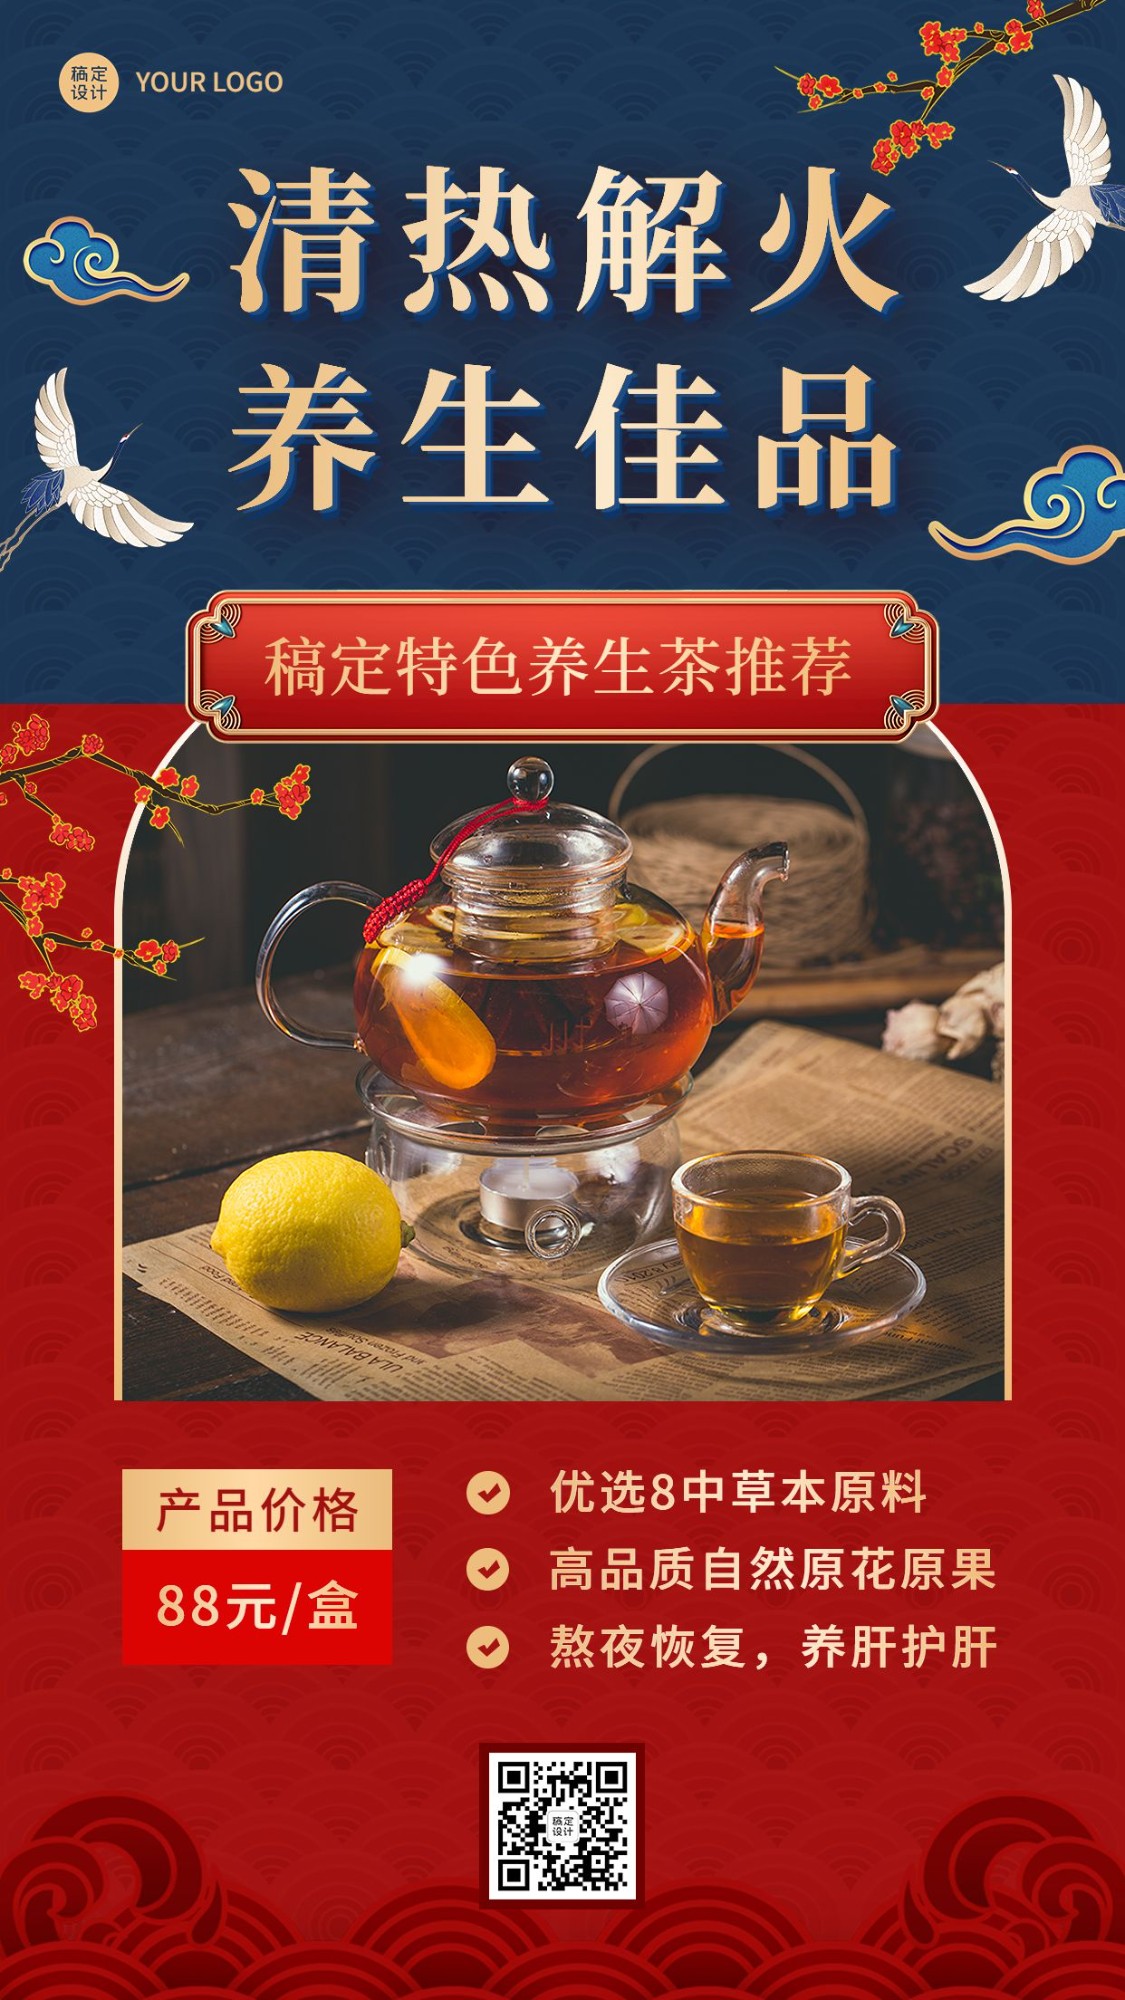 养生保健茶产品营销展示介绍中国风手机海报